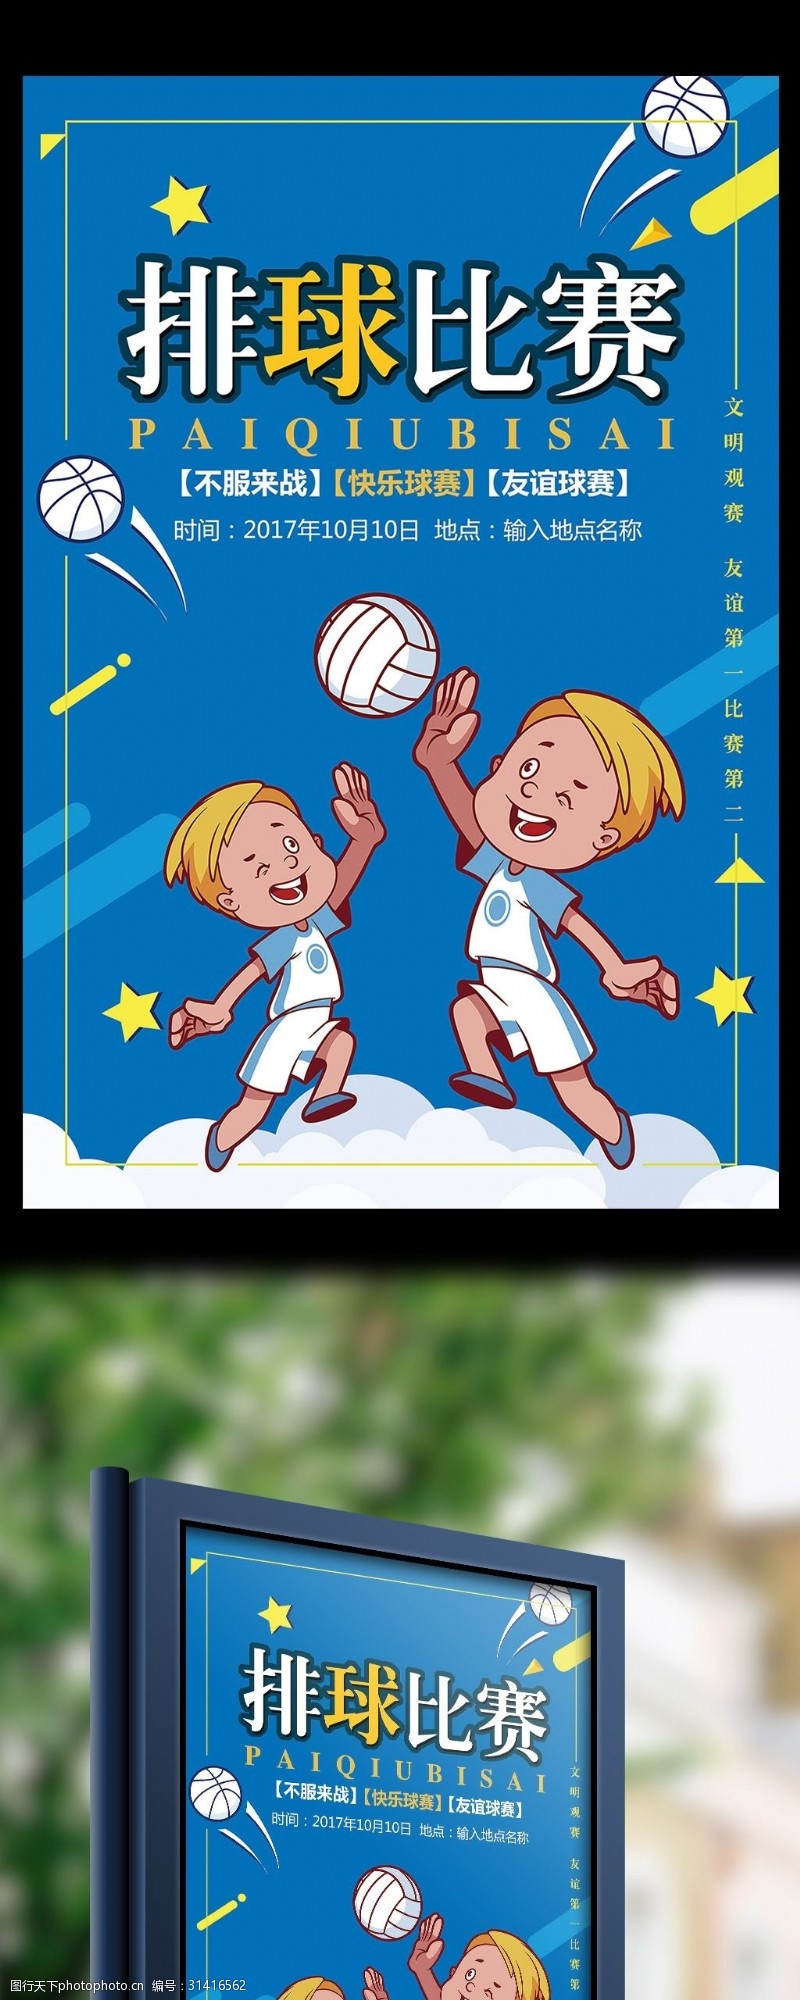 沙滩运动会蓝色卡通简约体育运动排球争霸赛海报模板